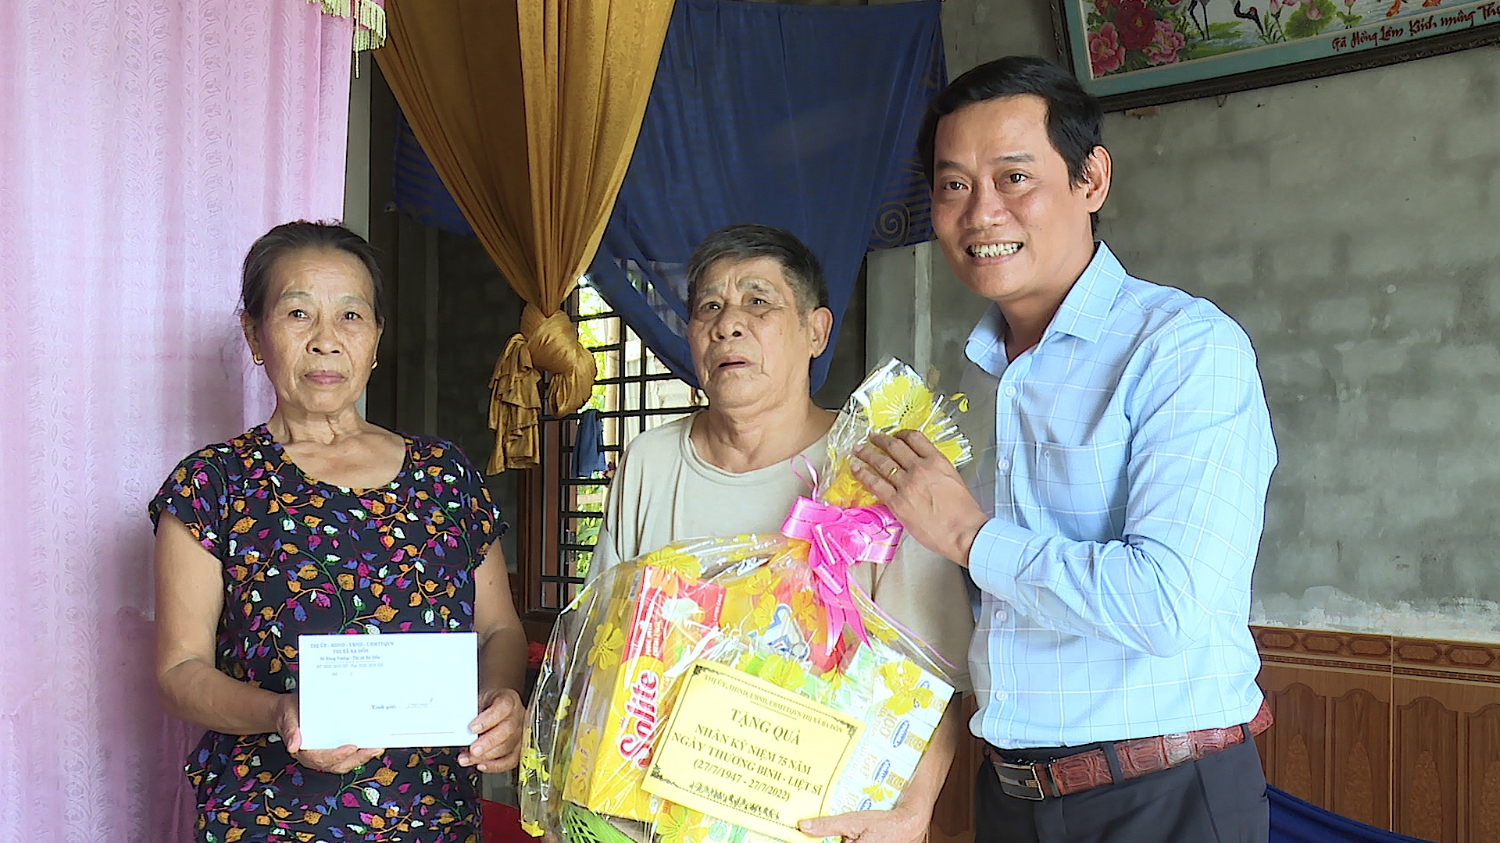 Đồng chí Phó Chủ tịch UBND thị xã Ba Đồn thăm, tặng quà ông Lê Quang Chình (Thôn Trung Thôn, xã Quảng Trung)